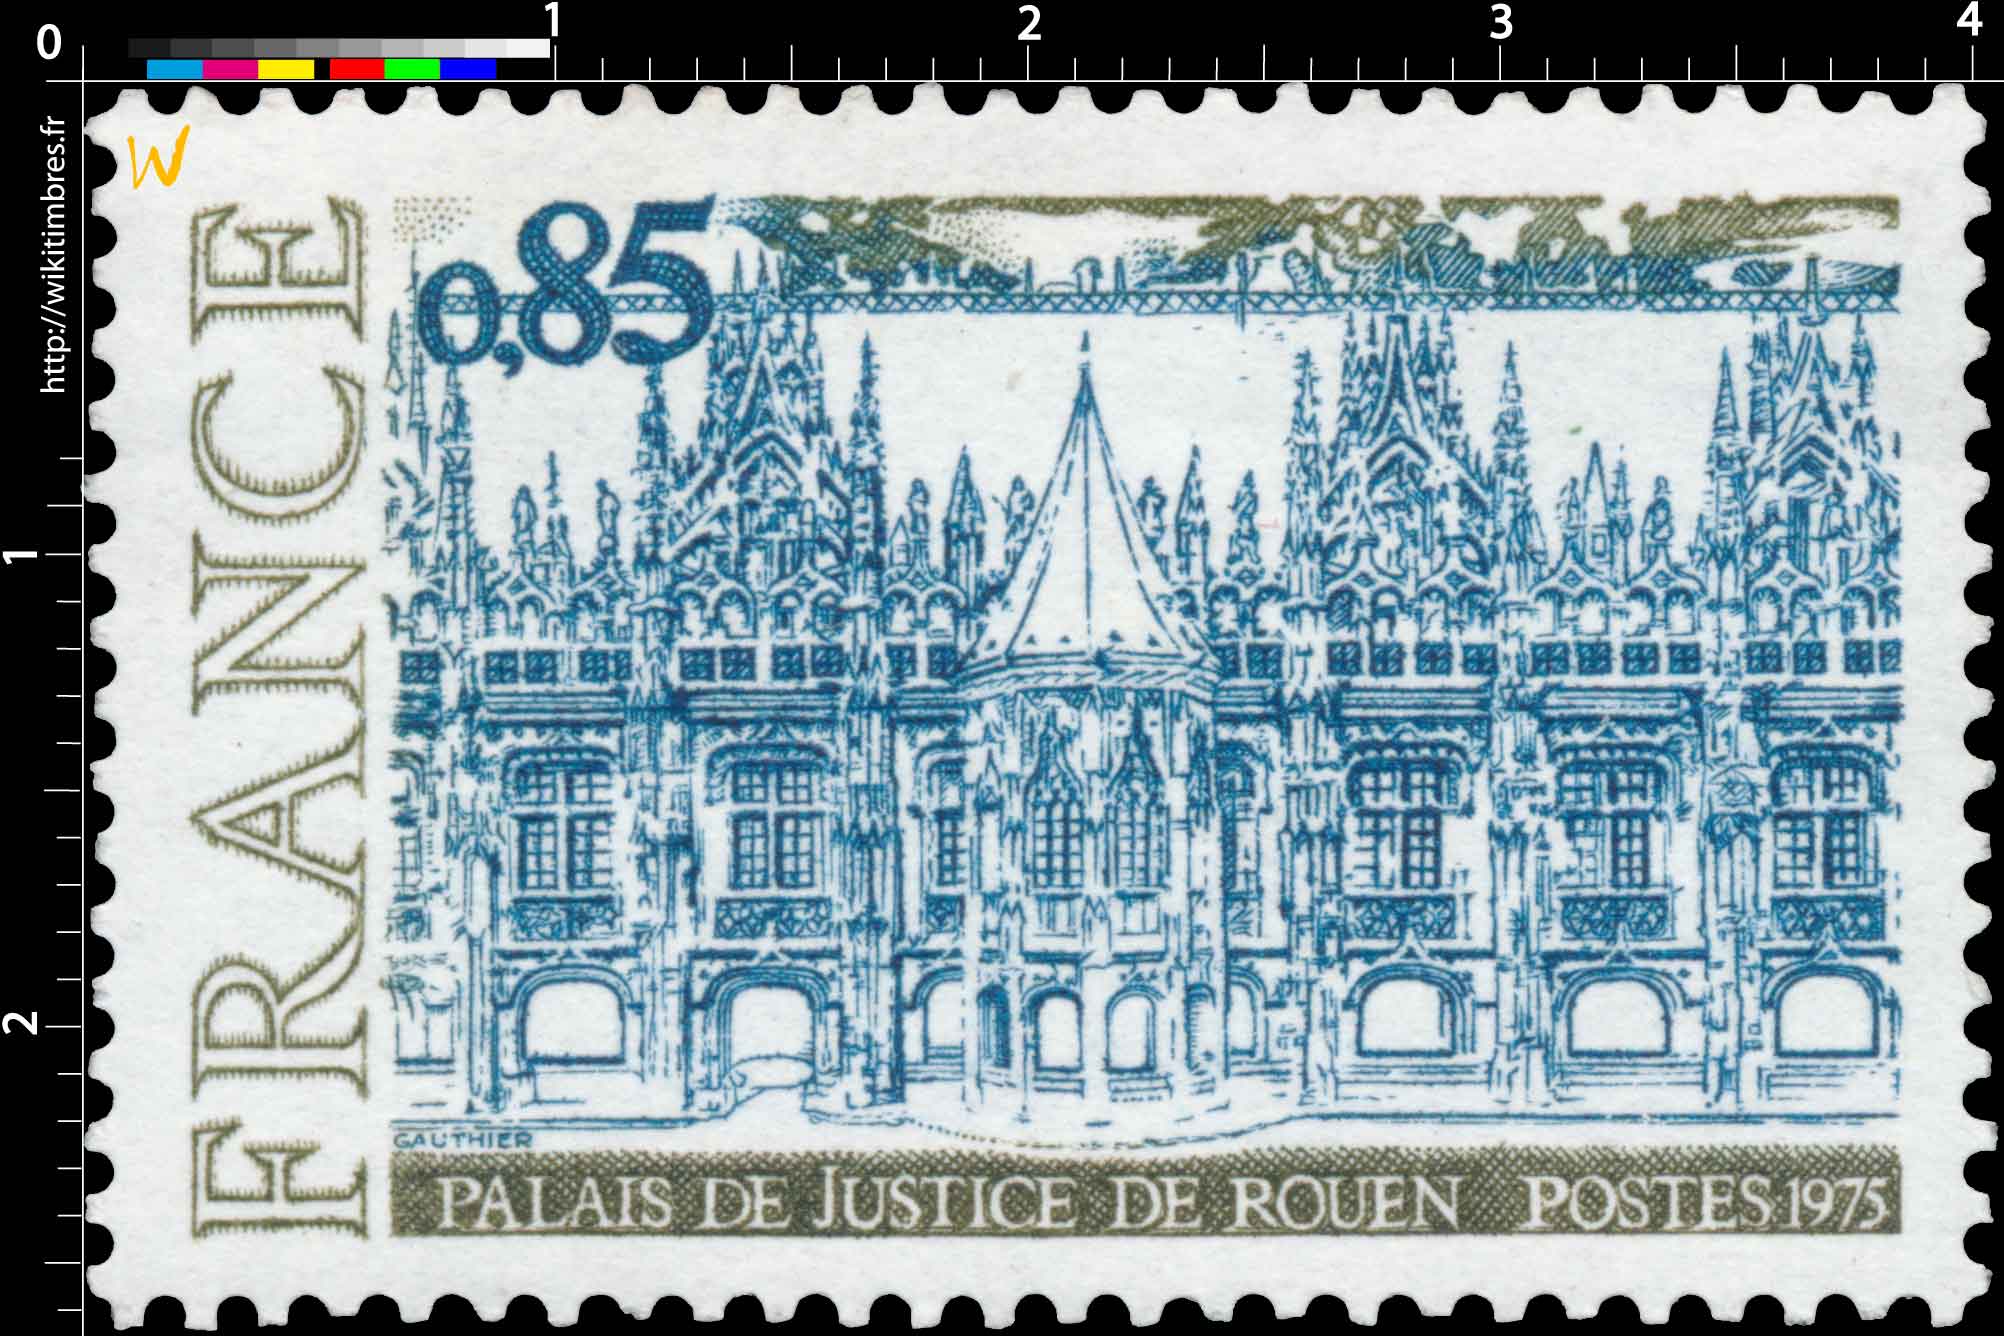 1975 PALAIS DE JUSTICE DE ROUEN